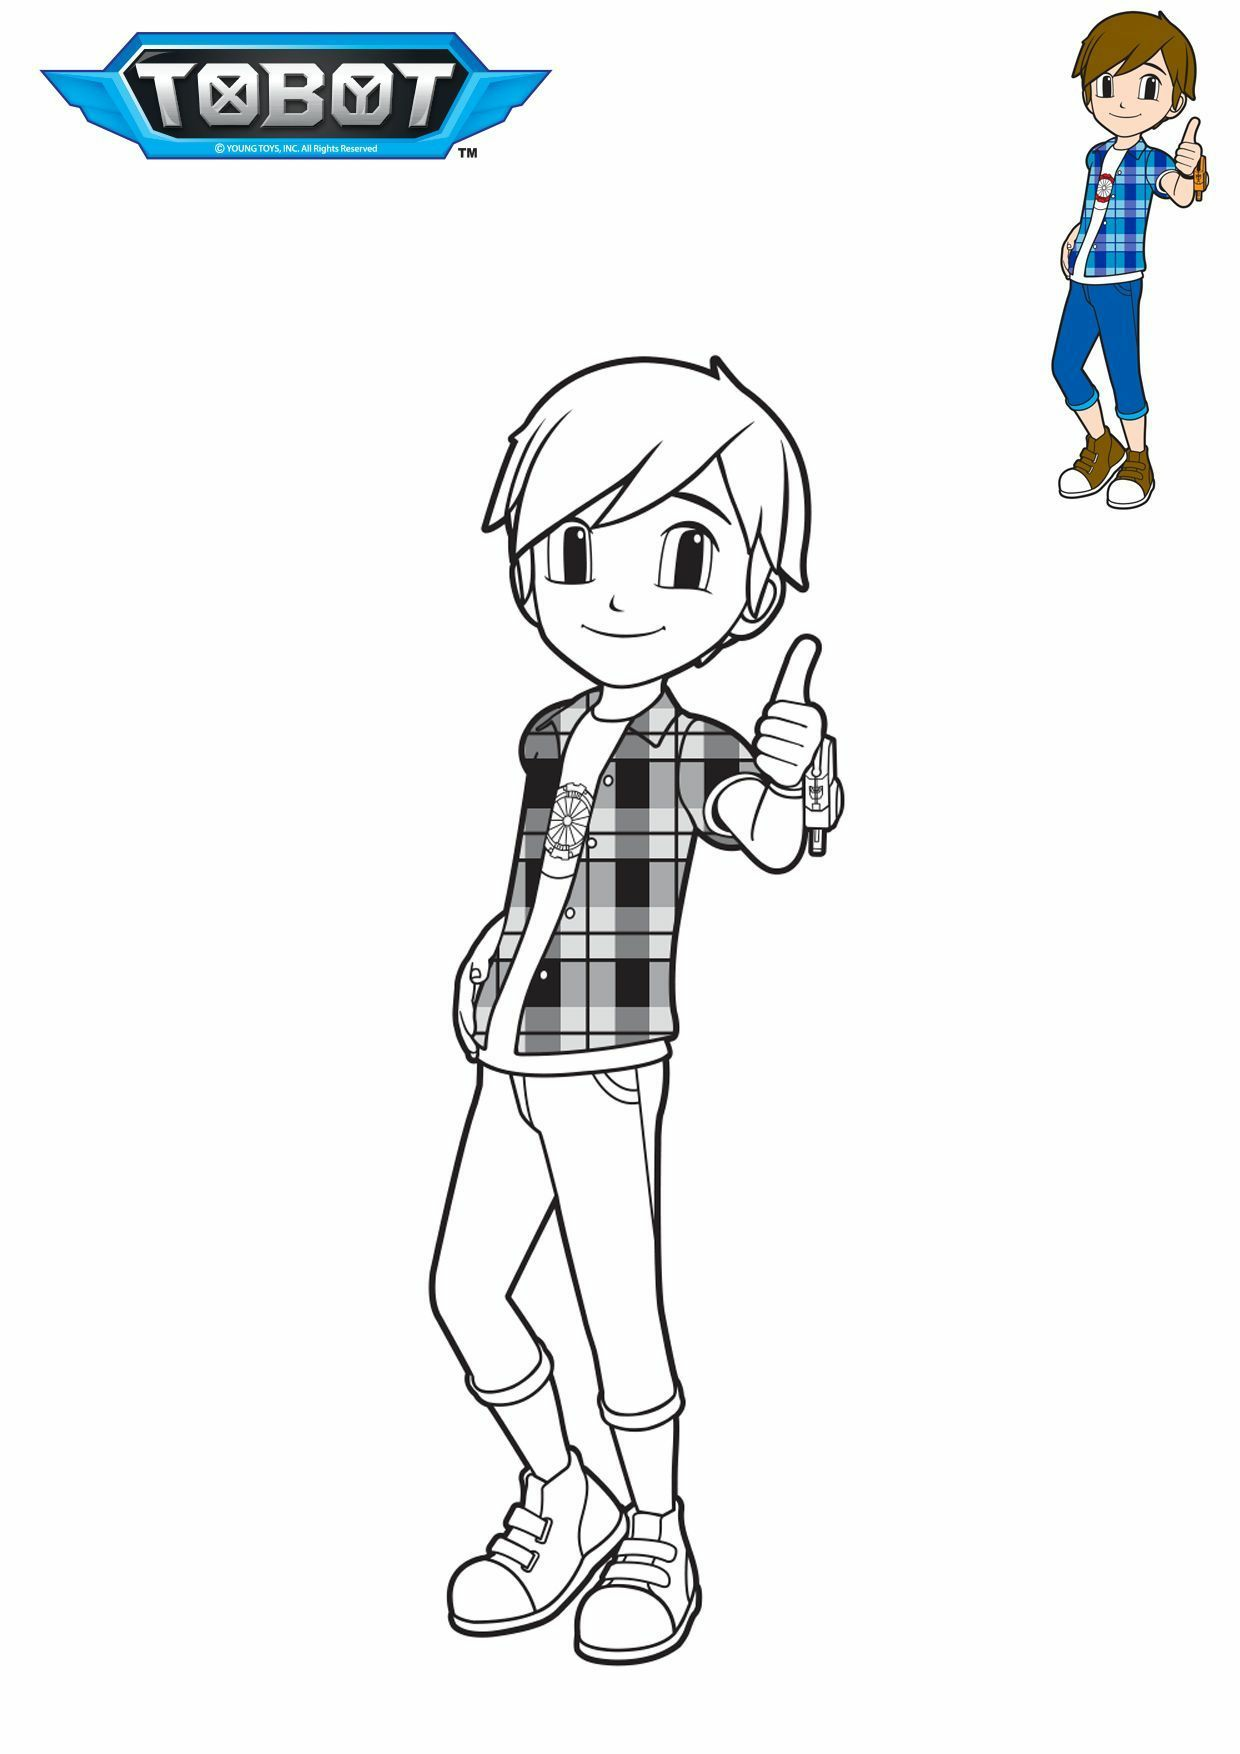   Tobot Ryan, un garçon faisant un pouce en l'air avec une chemise à carreaux 